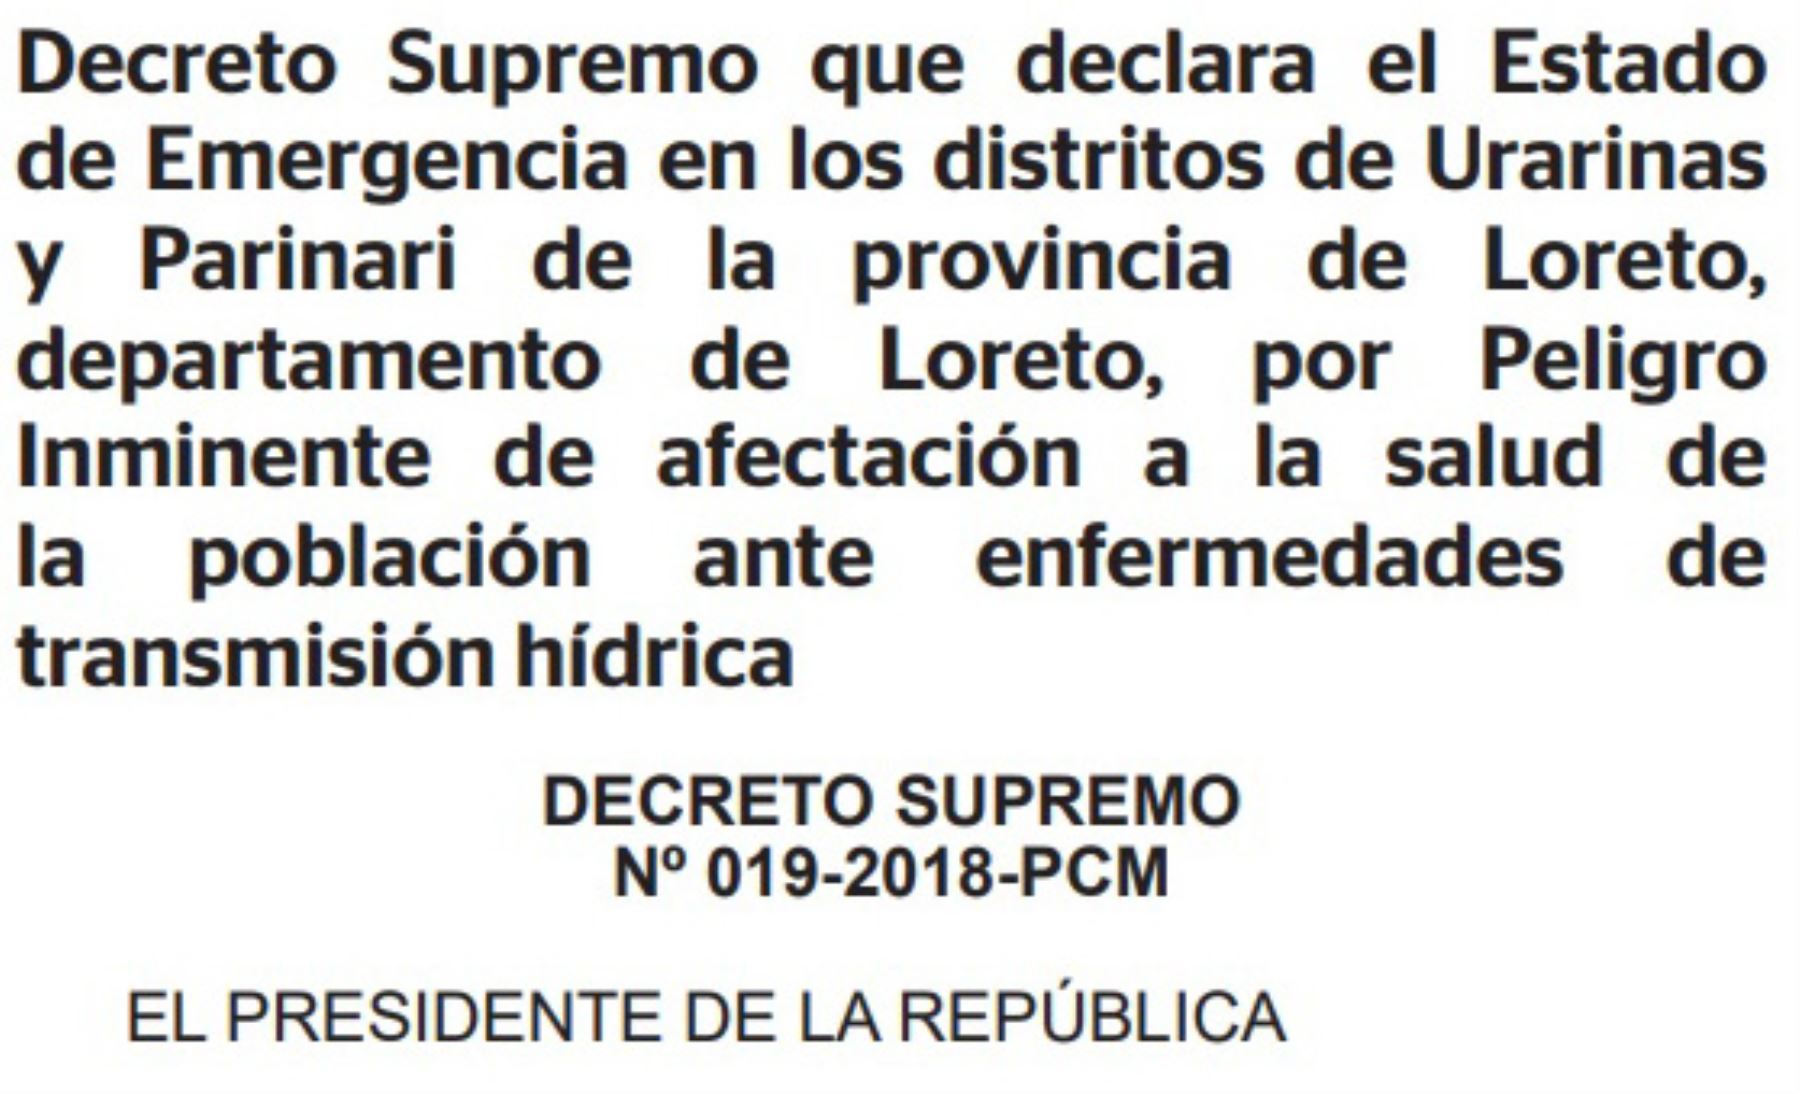 El Ejecutivo declaró, por un plazo de 60 días calendario, el estado de emergencia en los distritos de Urarinas y Parinari, de la provincia de Loreto, por peligro inminente de afectación a la salud de la población ante enfermedades de transmisión hídrica.